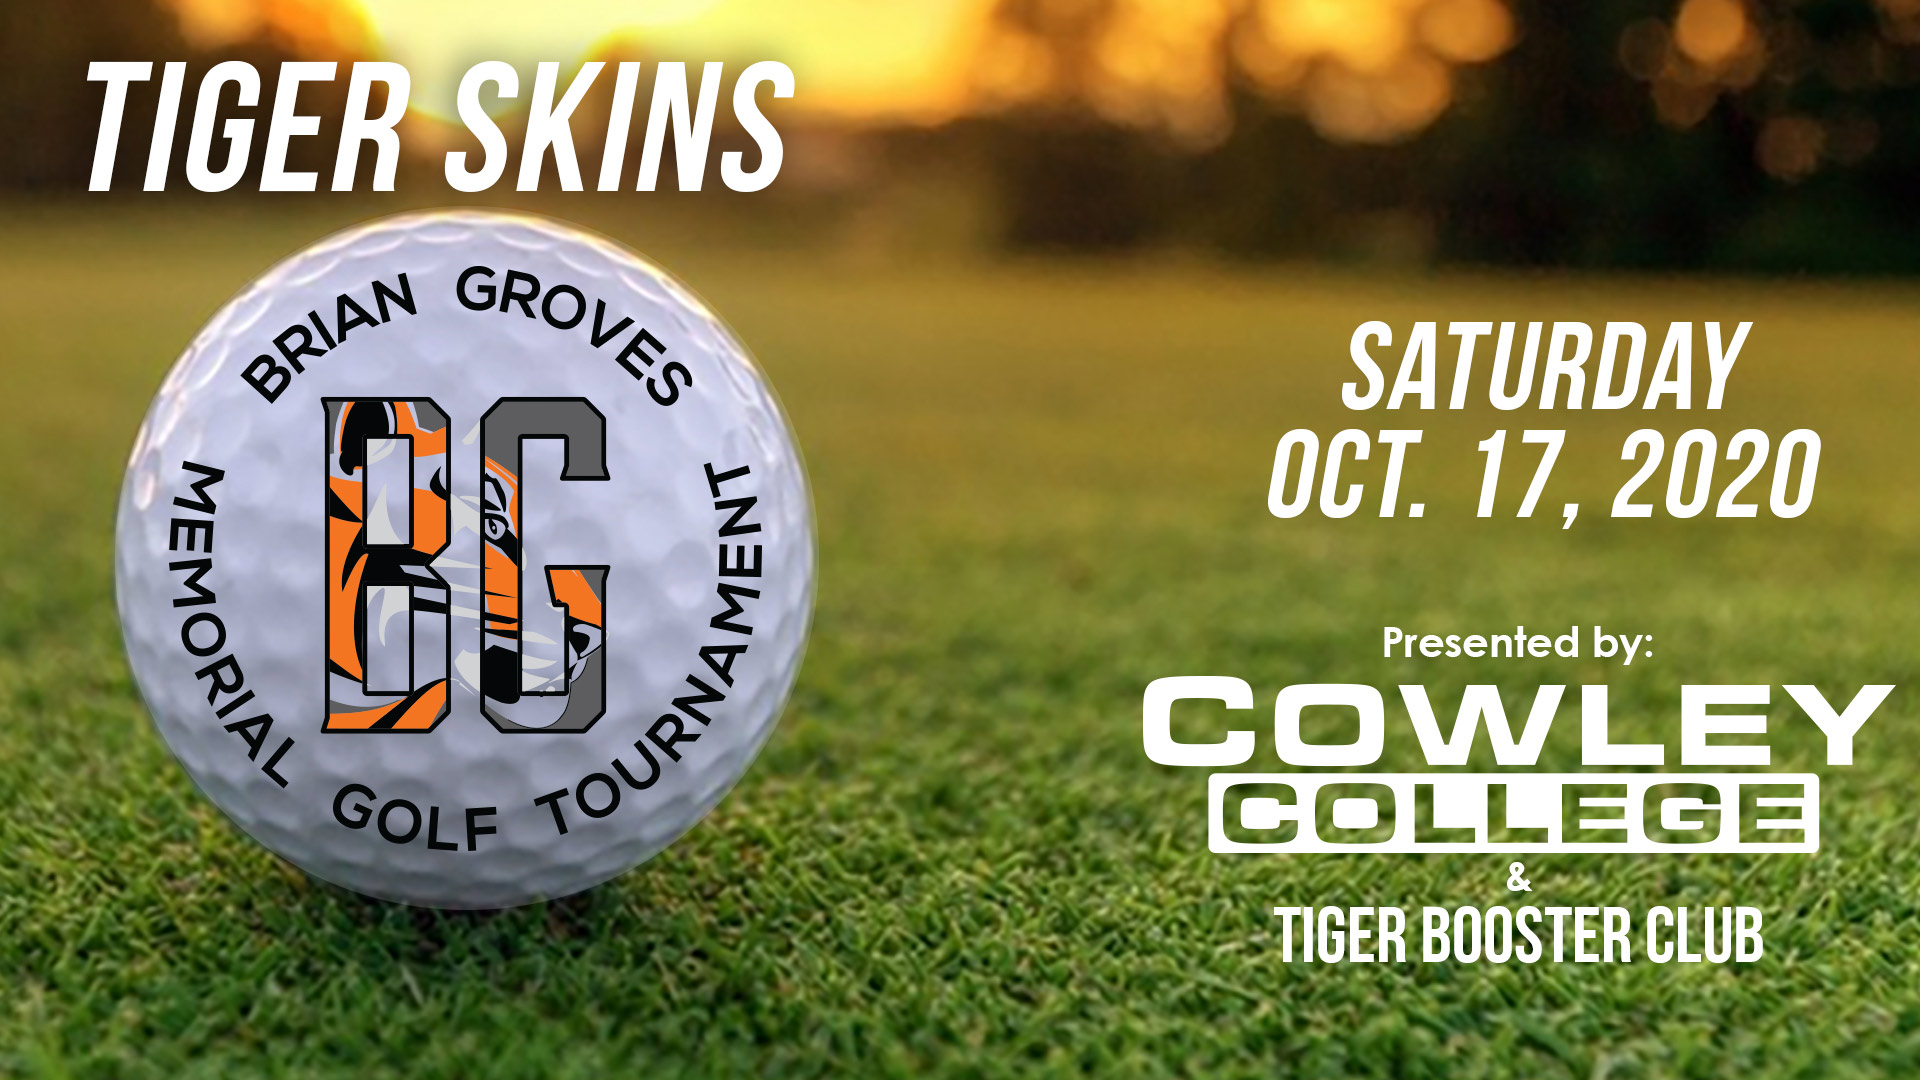 Tiger Skins/Brian Groves Memorial Golf Tournament